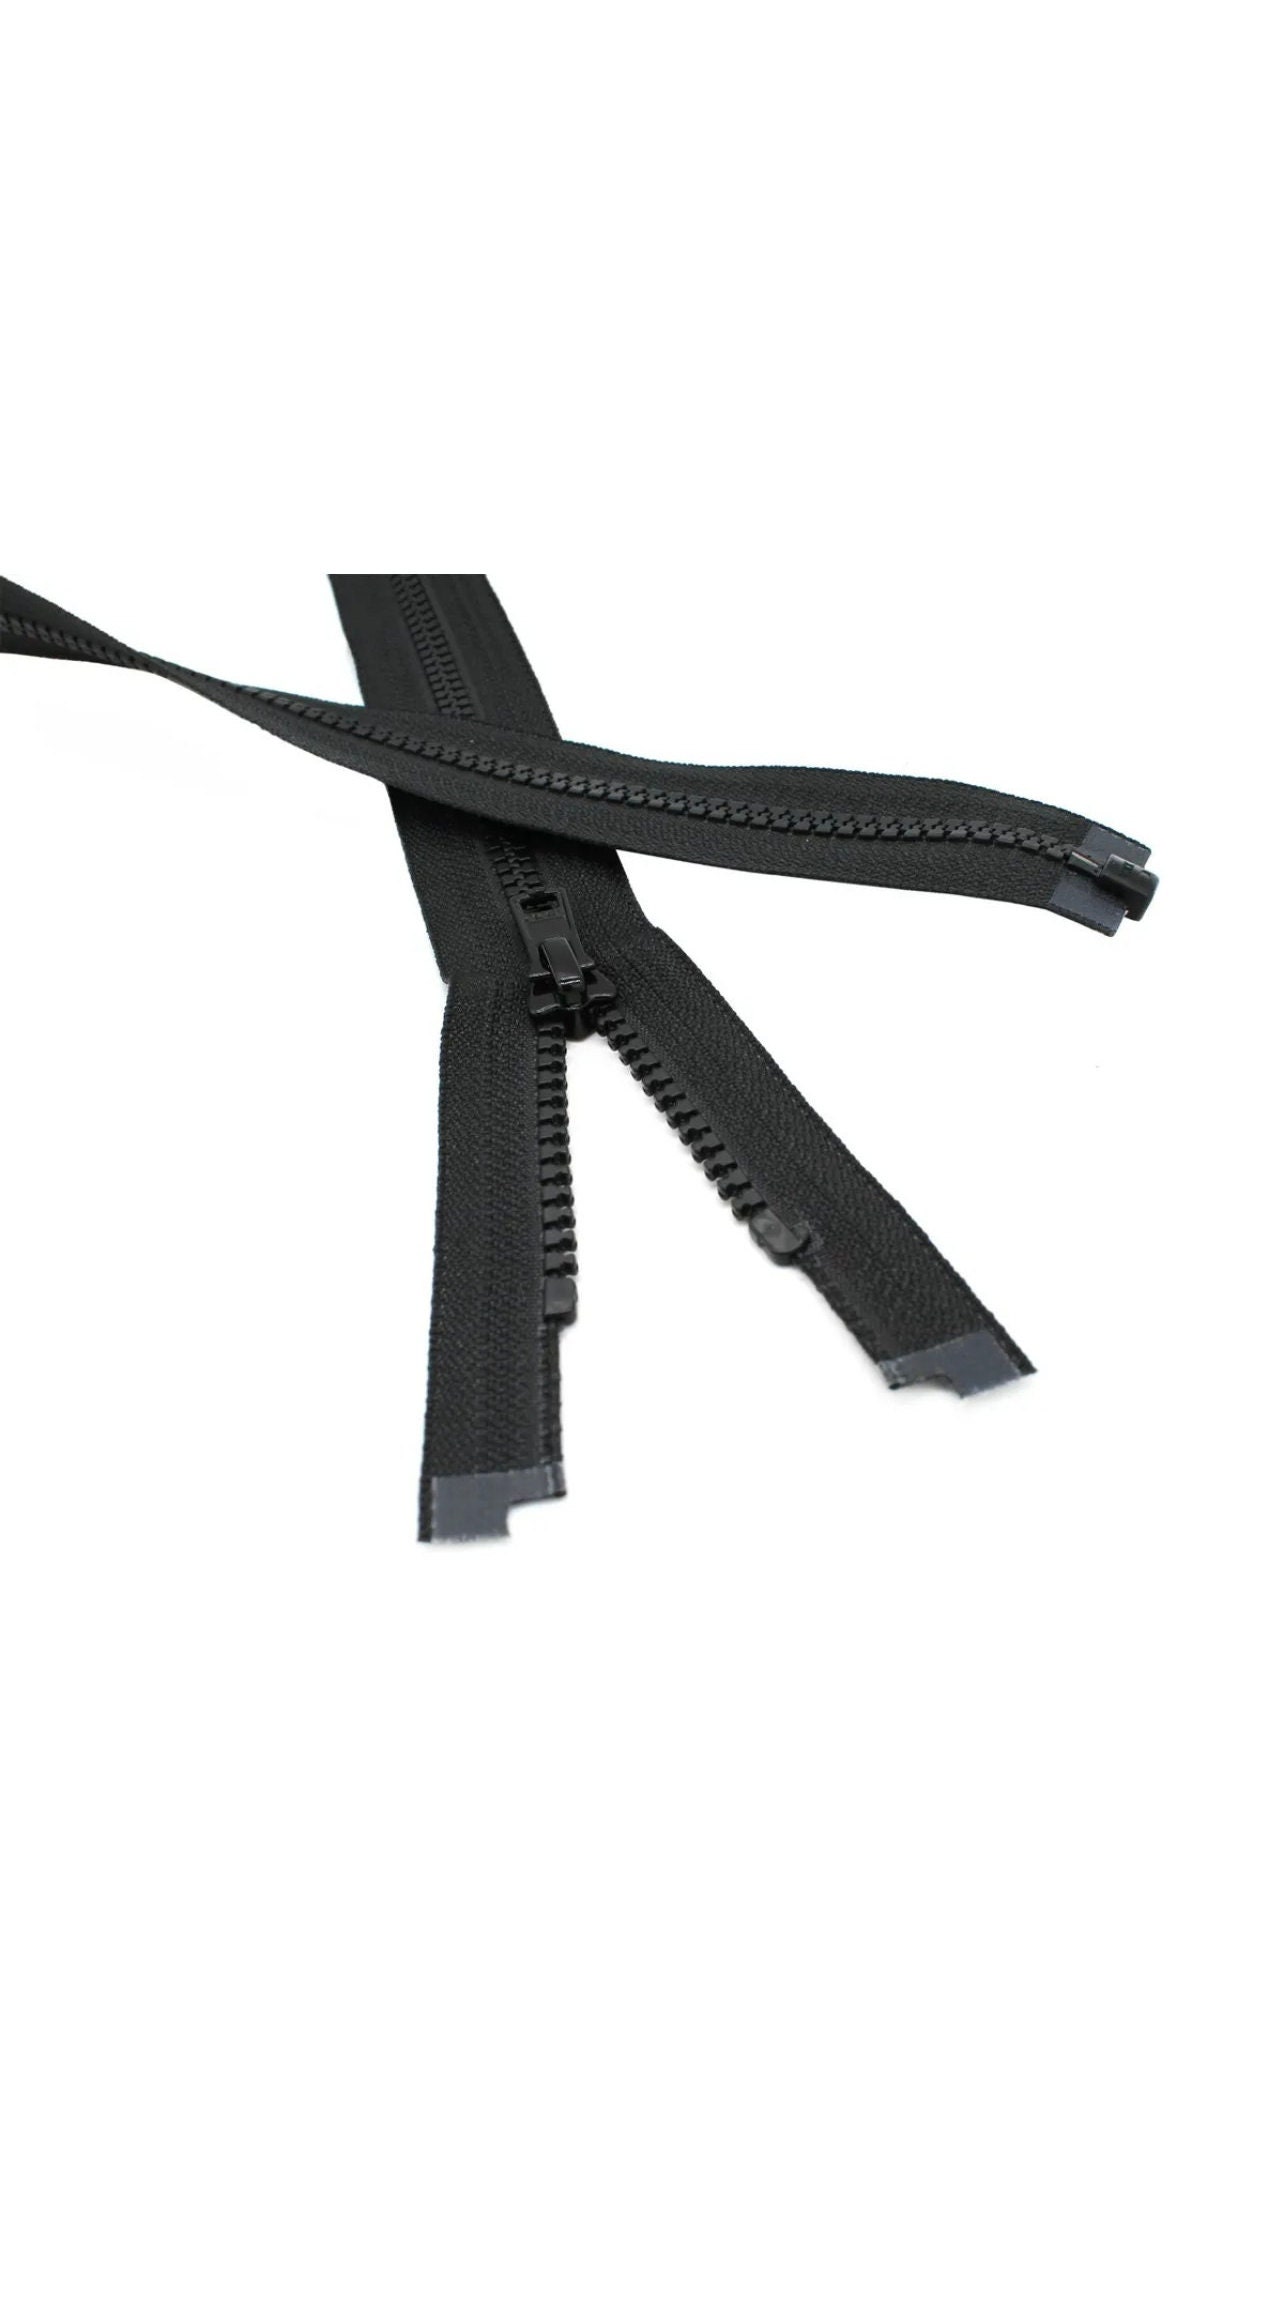 YKK Zipper Repair Kit - Metal